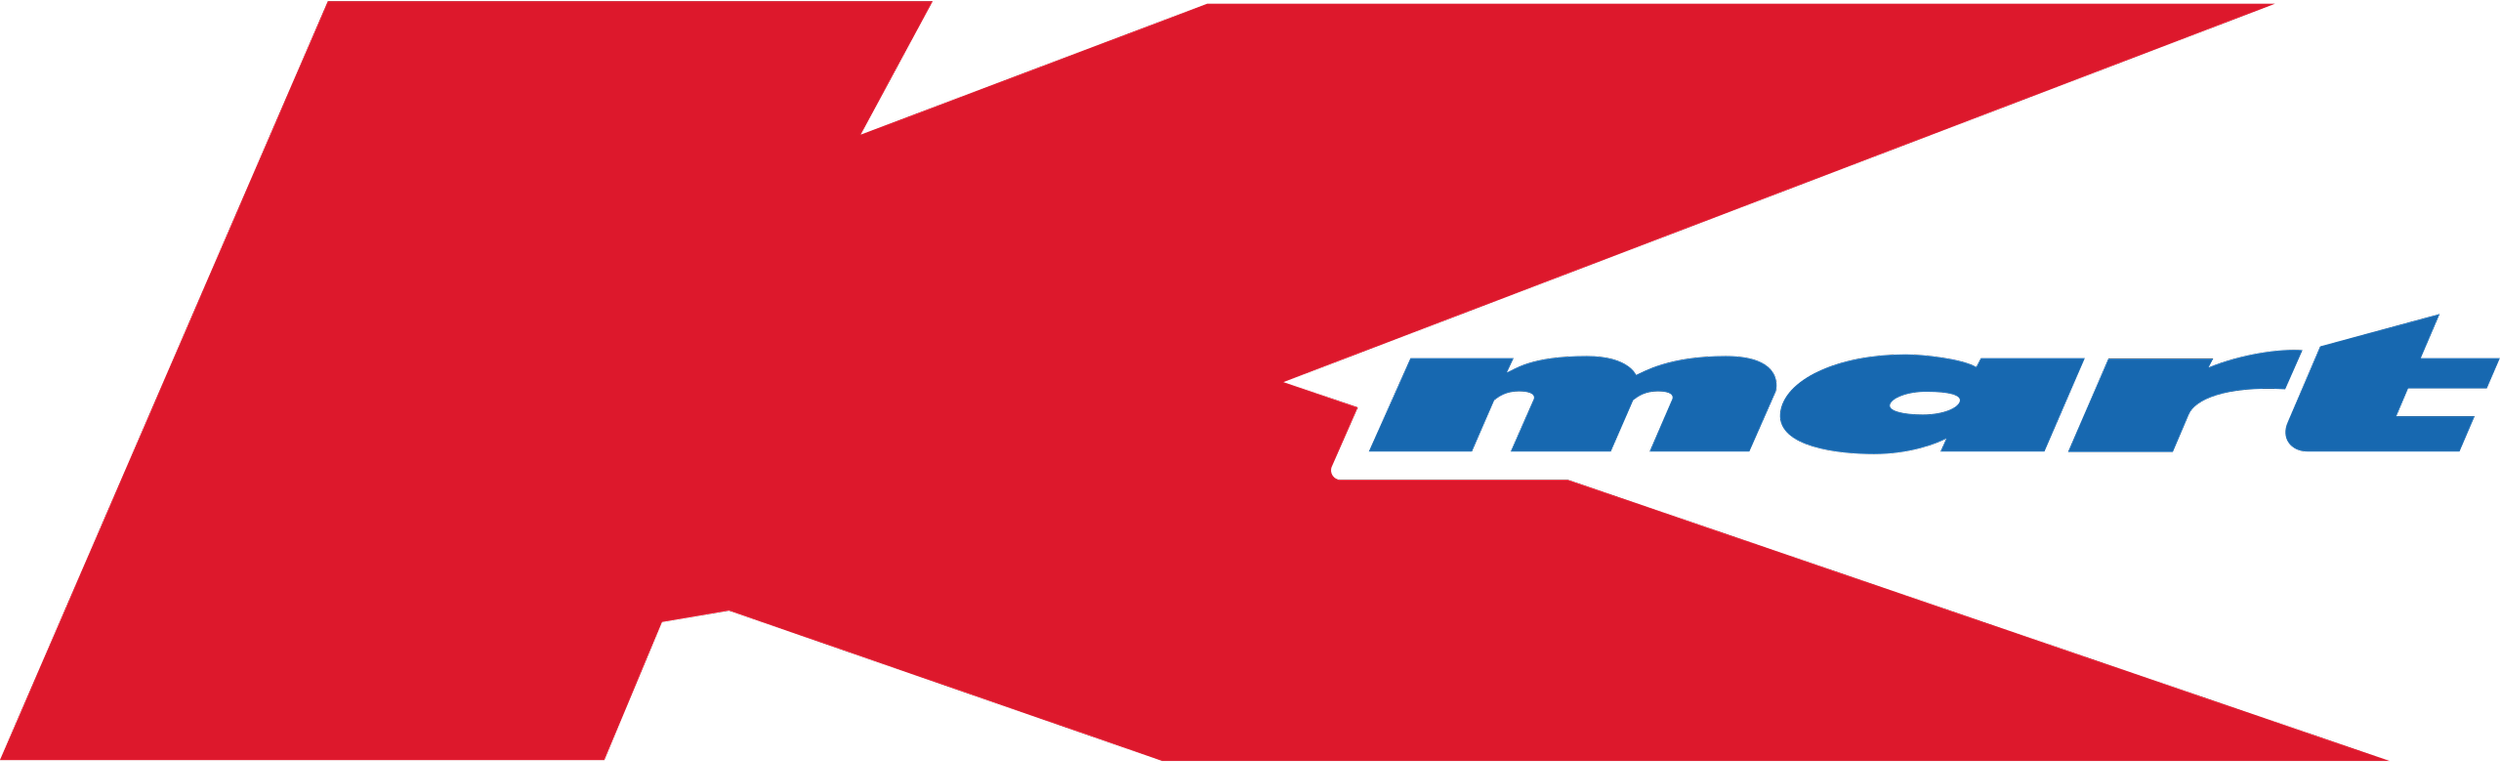 Kmart_Australia_logo.svg.png